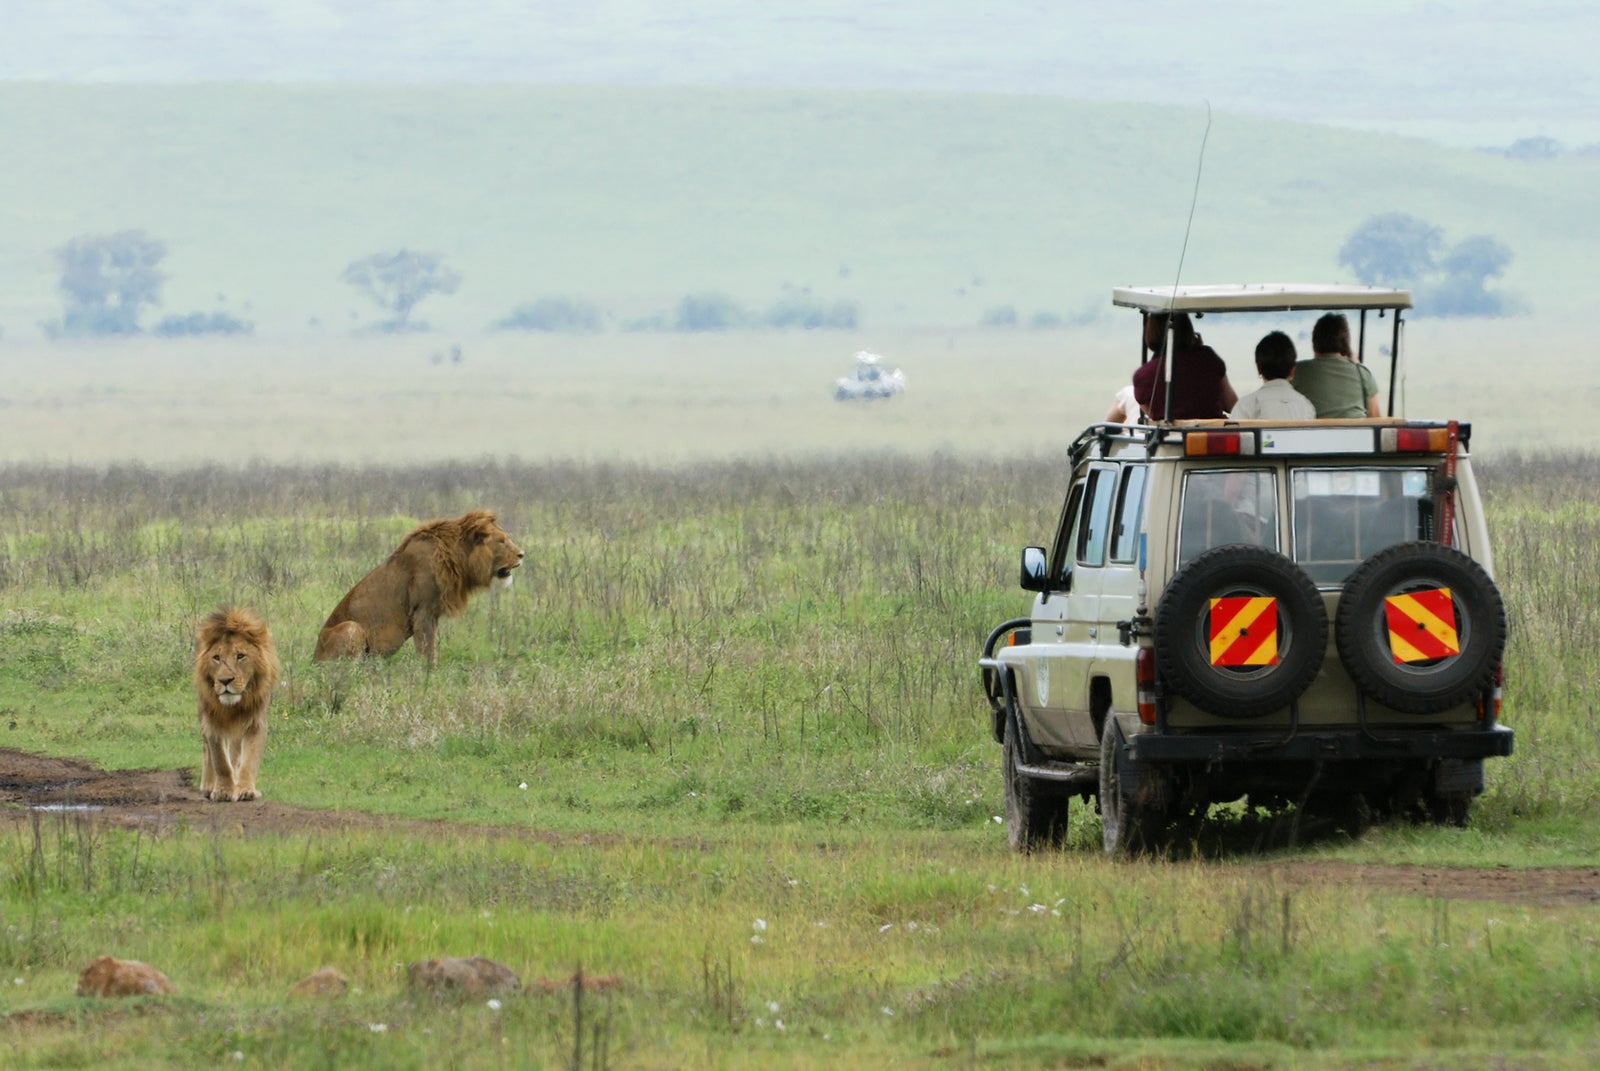 A safari jeep near a pride of lions in a field